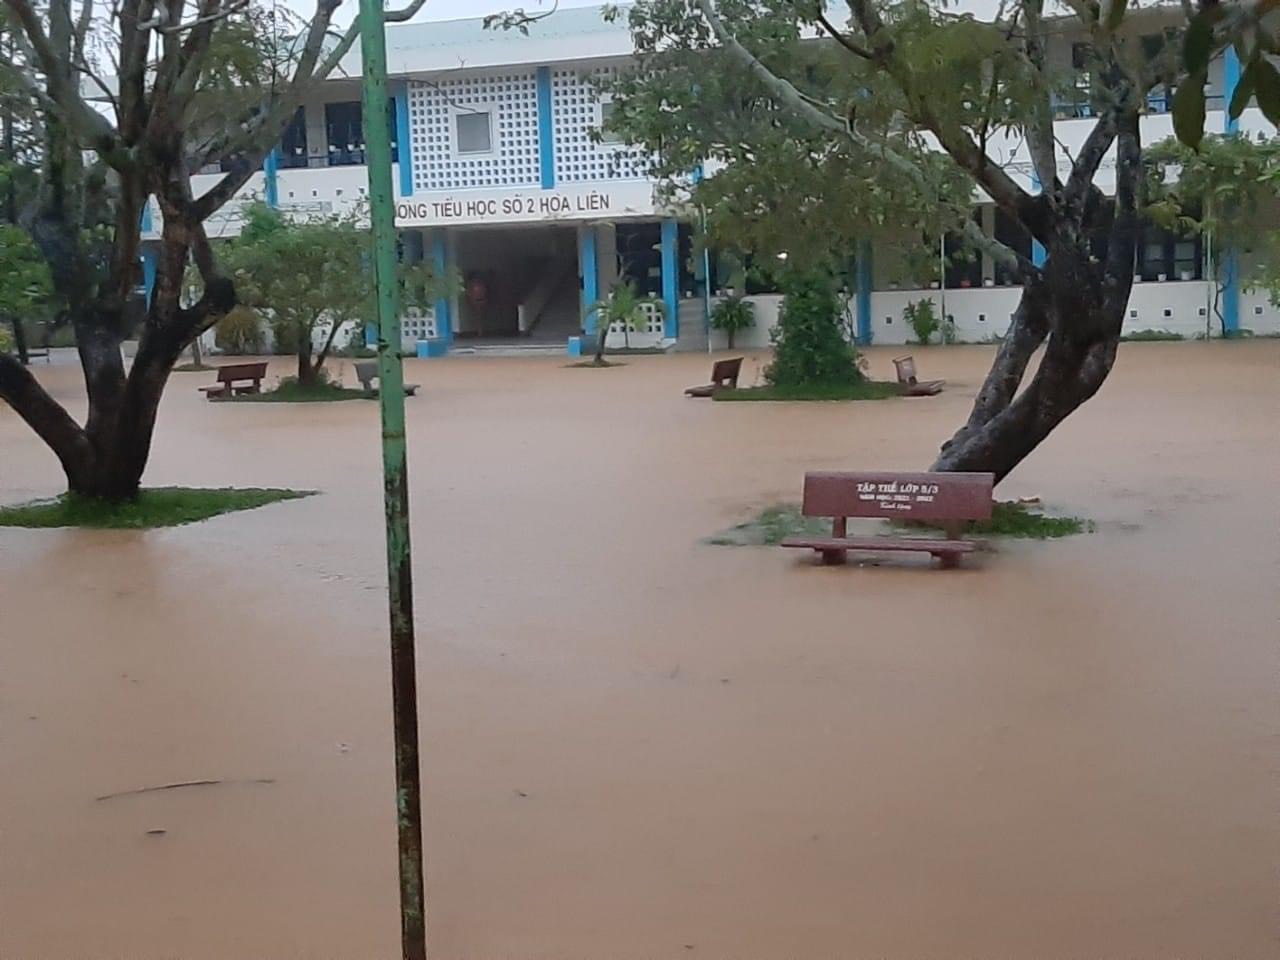 Trường tiểu học Số 2 Hoà Liên chìm trong biển nước.